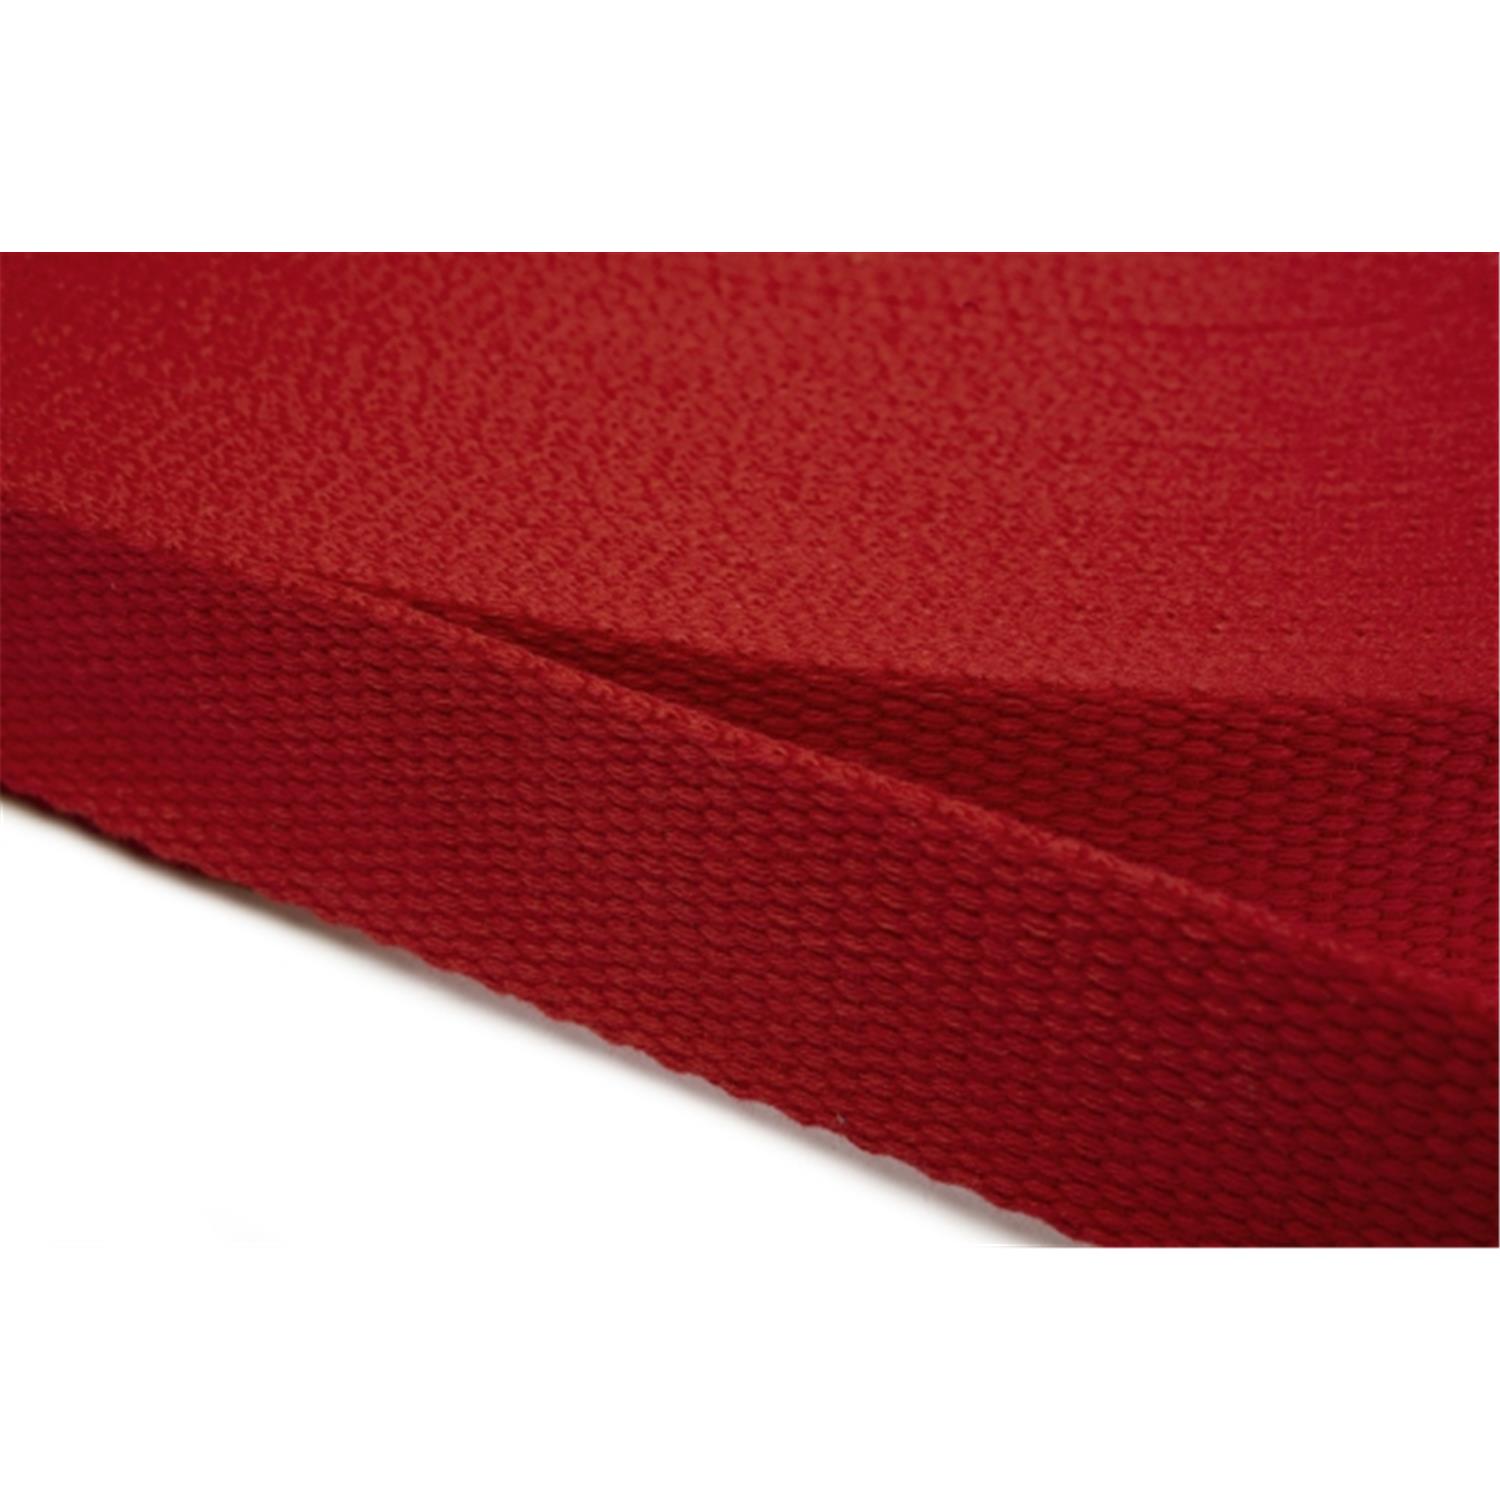 Gurtband aus Baumwolle 20mm in 20 Farben 10 - rot 6 Meter